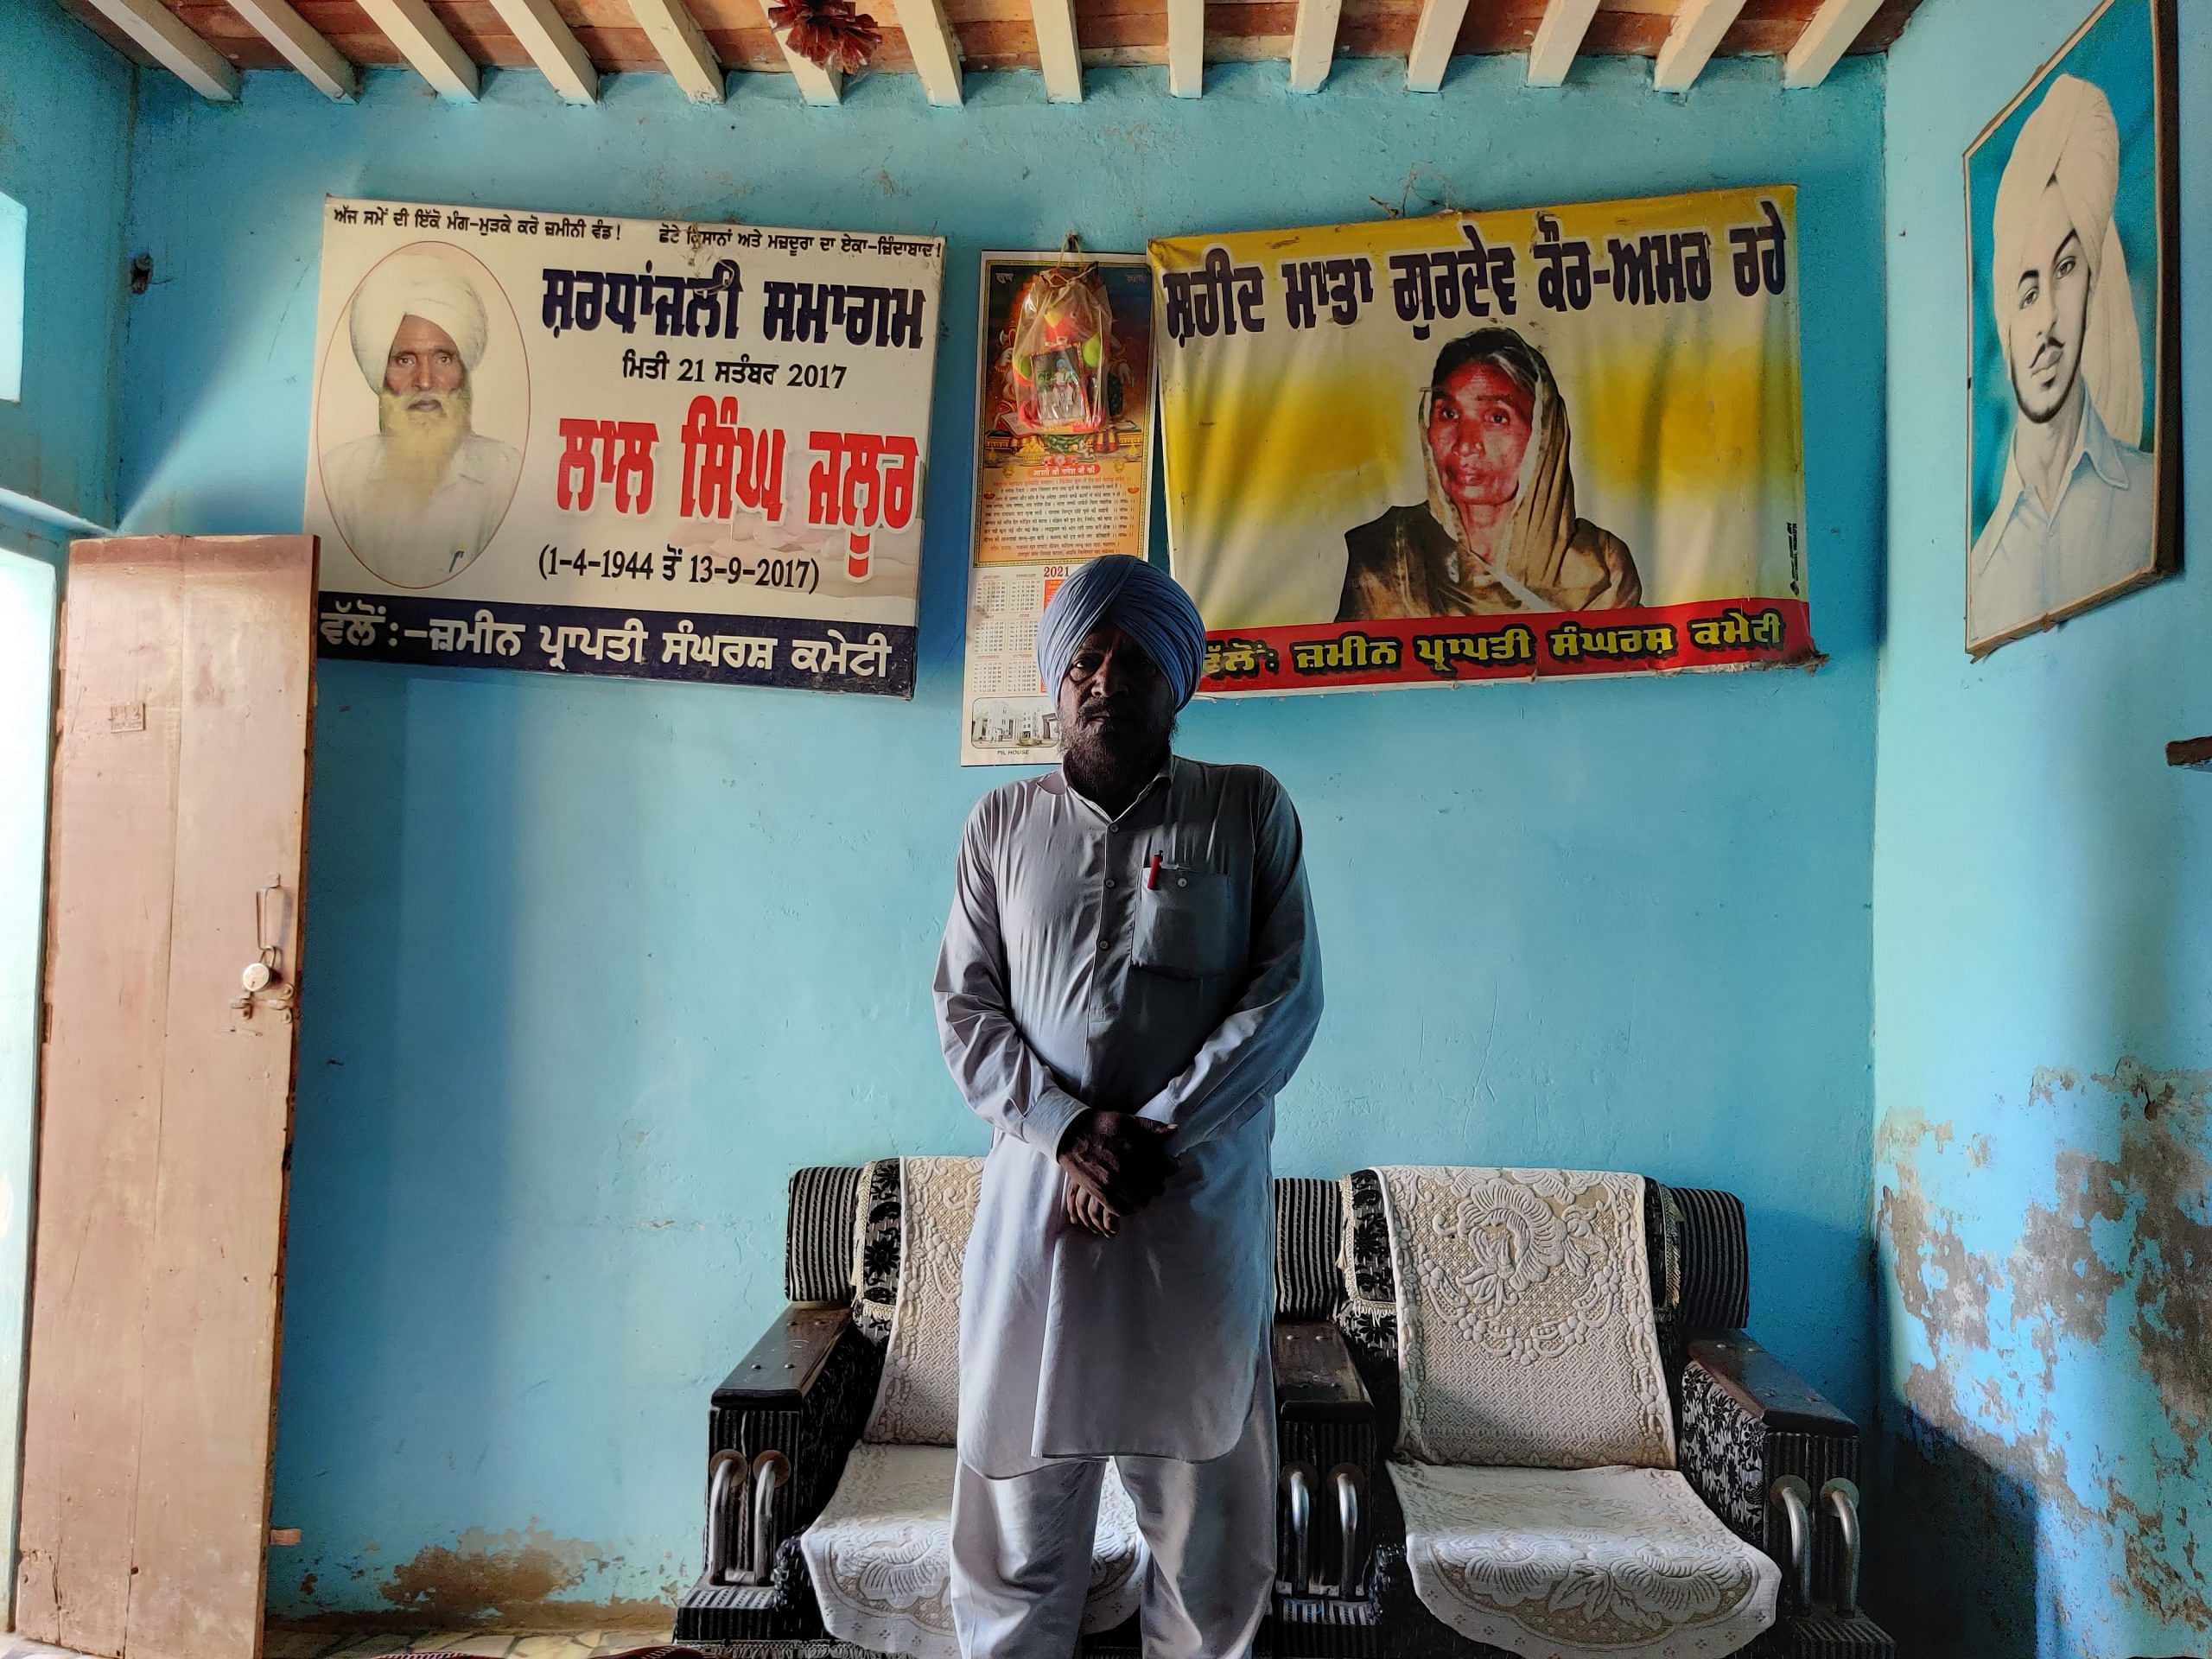 पंजाब के संगरूर जिले के झालूर गांव में गुरदेव कौर का बेटा बलबीर सिंह, जिसका पोस्टर (पीछे-दाएं) भगत सिंह के फ्रेम के बगल में लटका हुआ है। | उर्जिता भारद्वाज | दिप्रिंट 